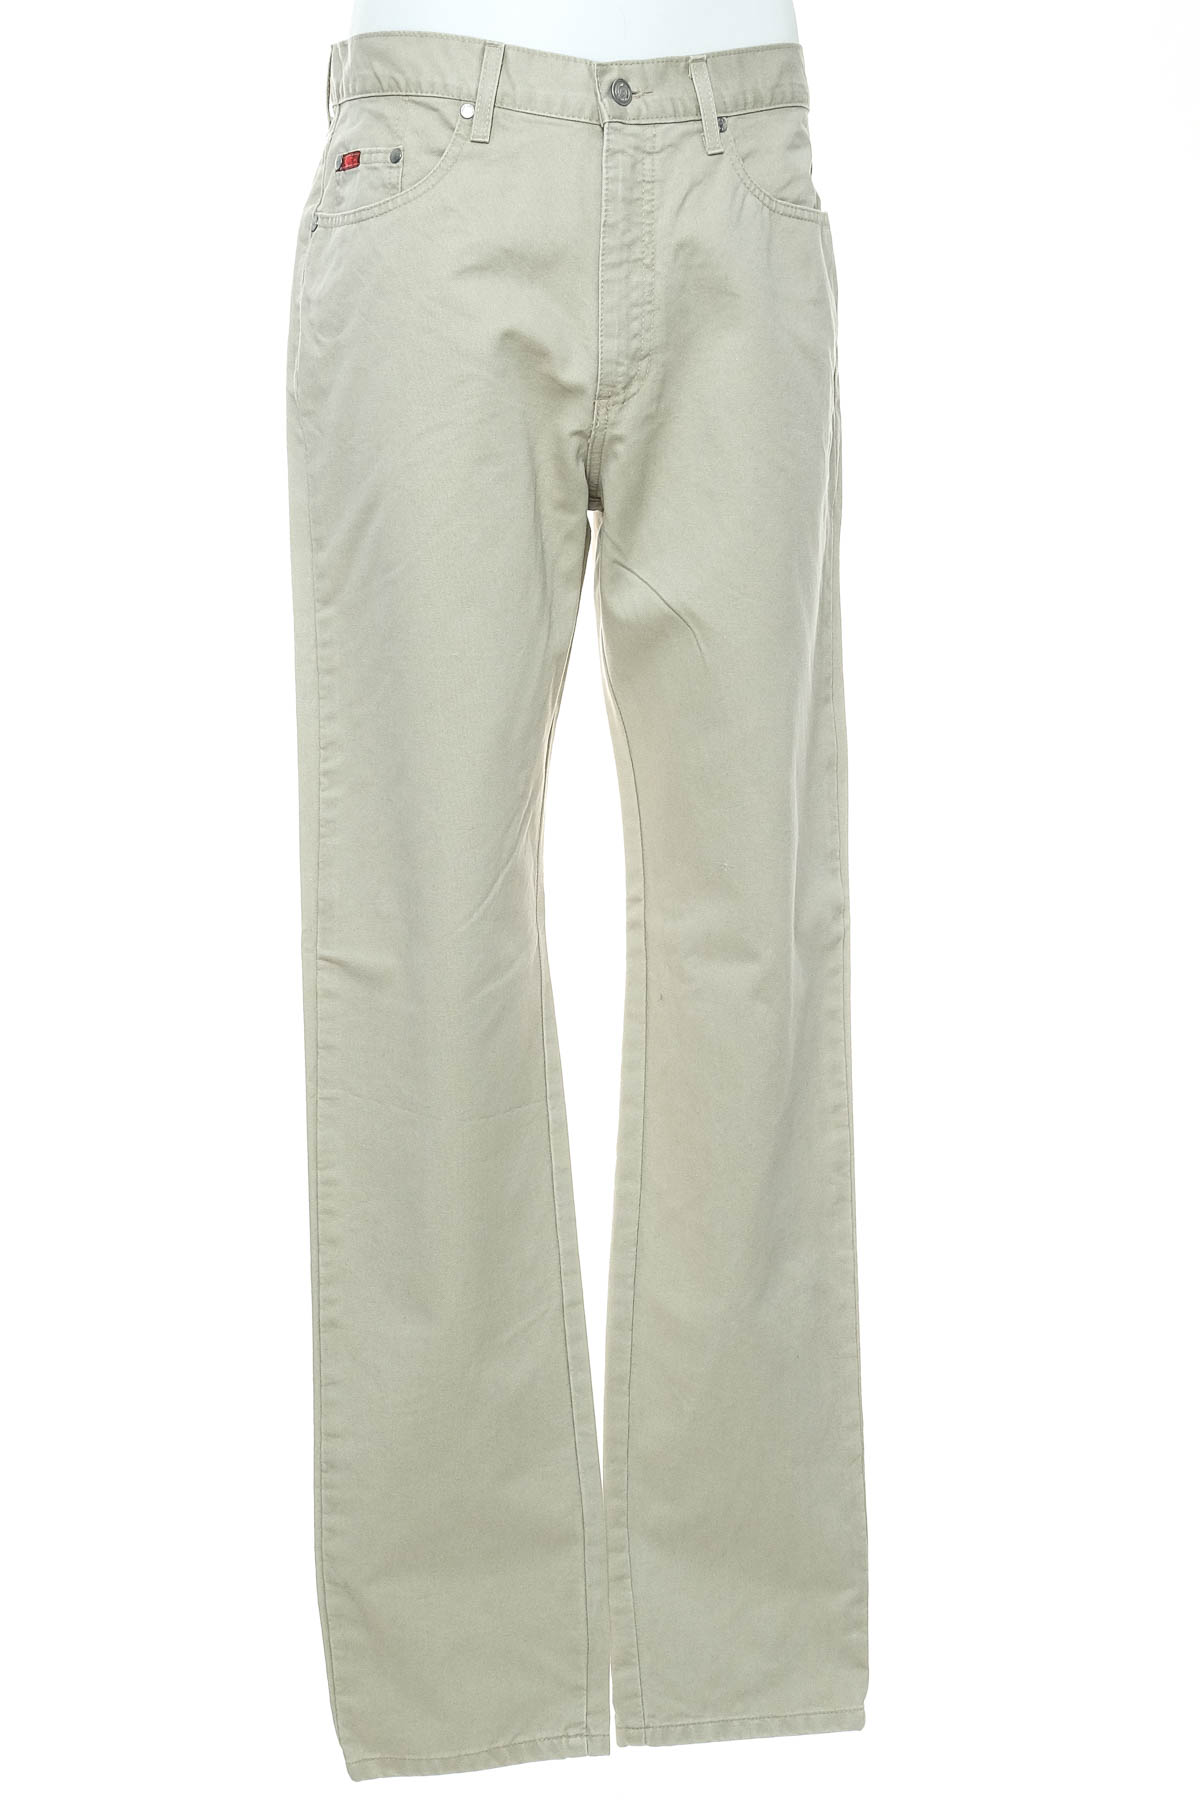 Jeans pentru bărbăți - Lee Cooper - 0